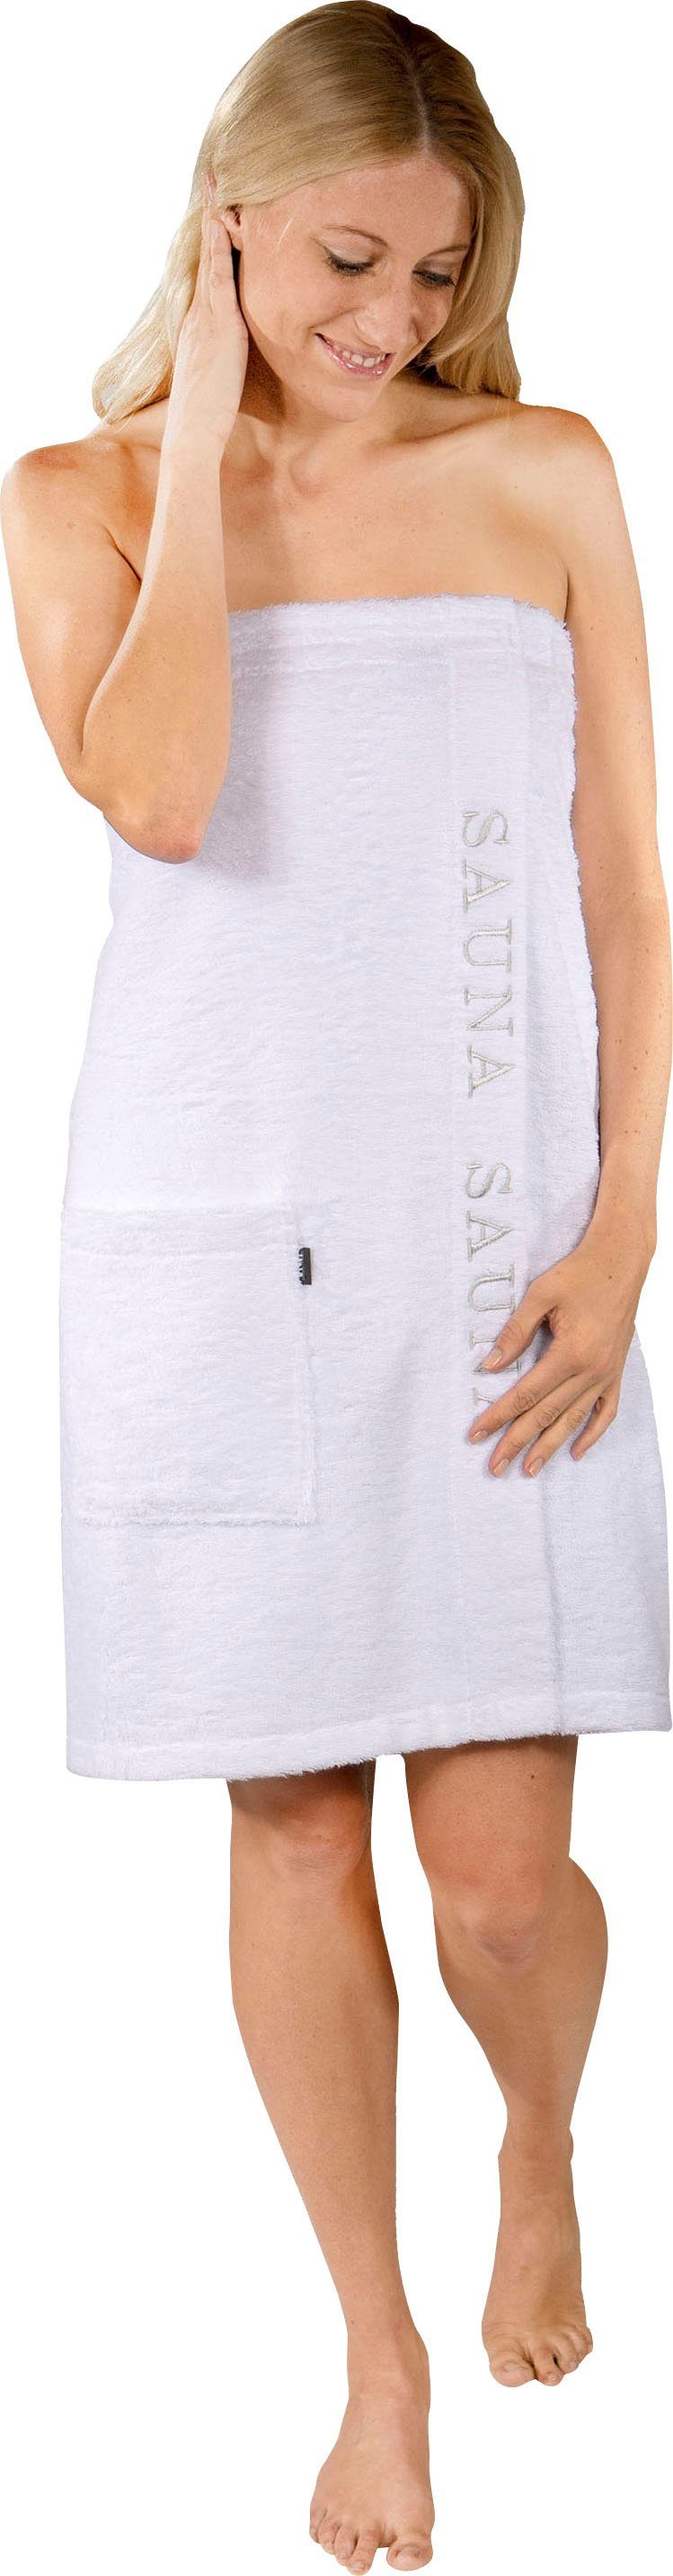 Wewo fashion Kilt 9534, Langform, Baumwolle, Klettverschluss, Saunakilt für Damen, mit Klettverschluss & Stickerei Sauna weiß | Saunakilts